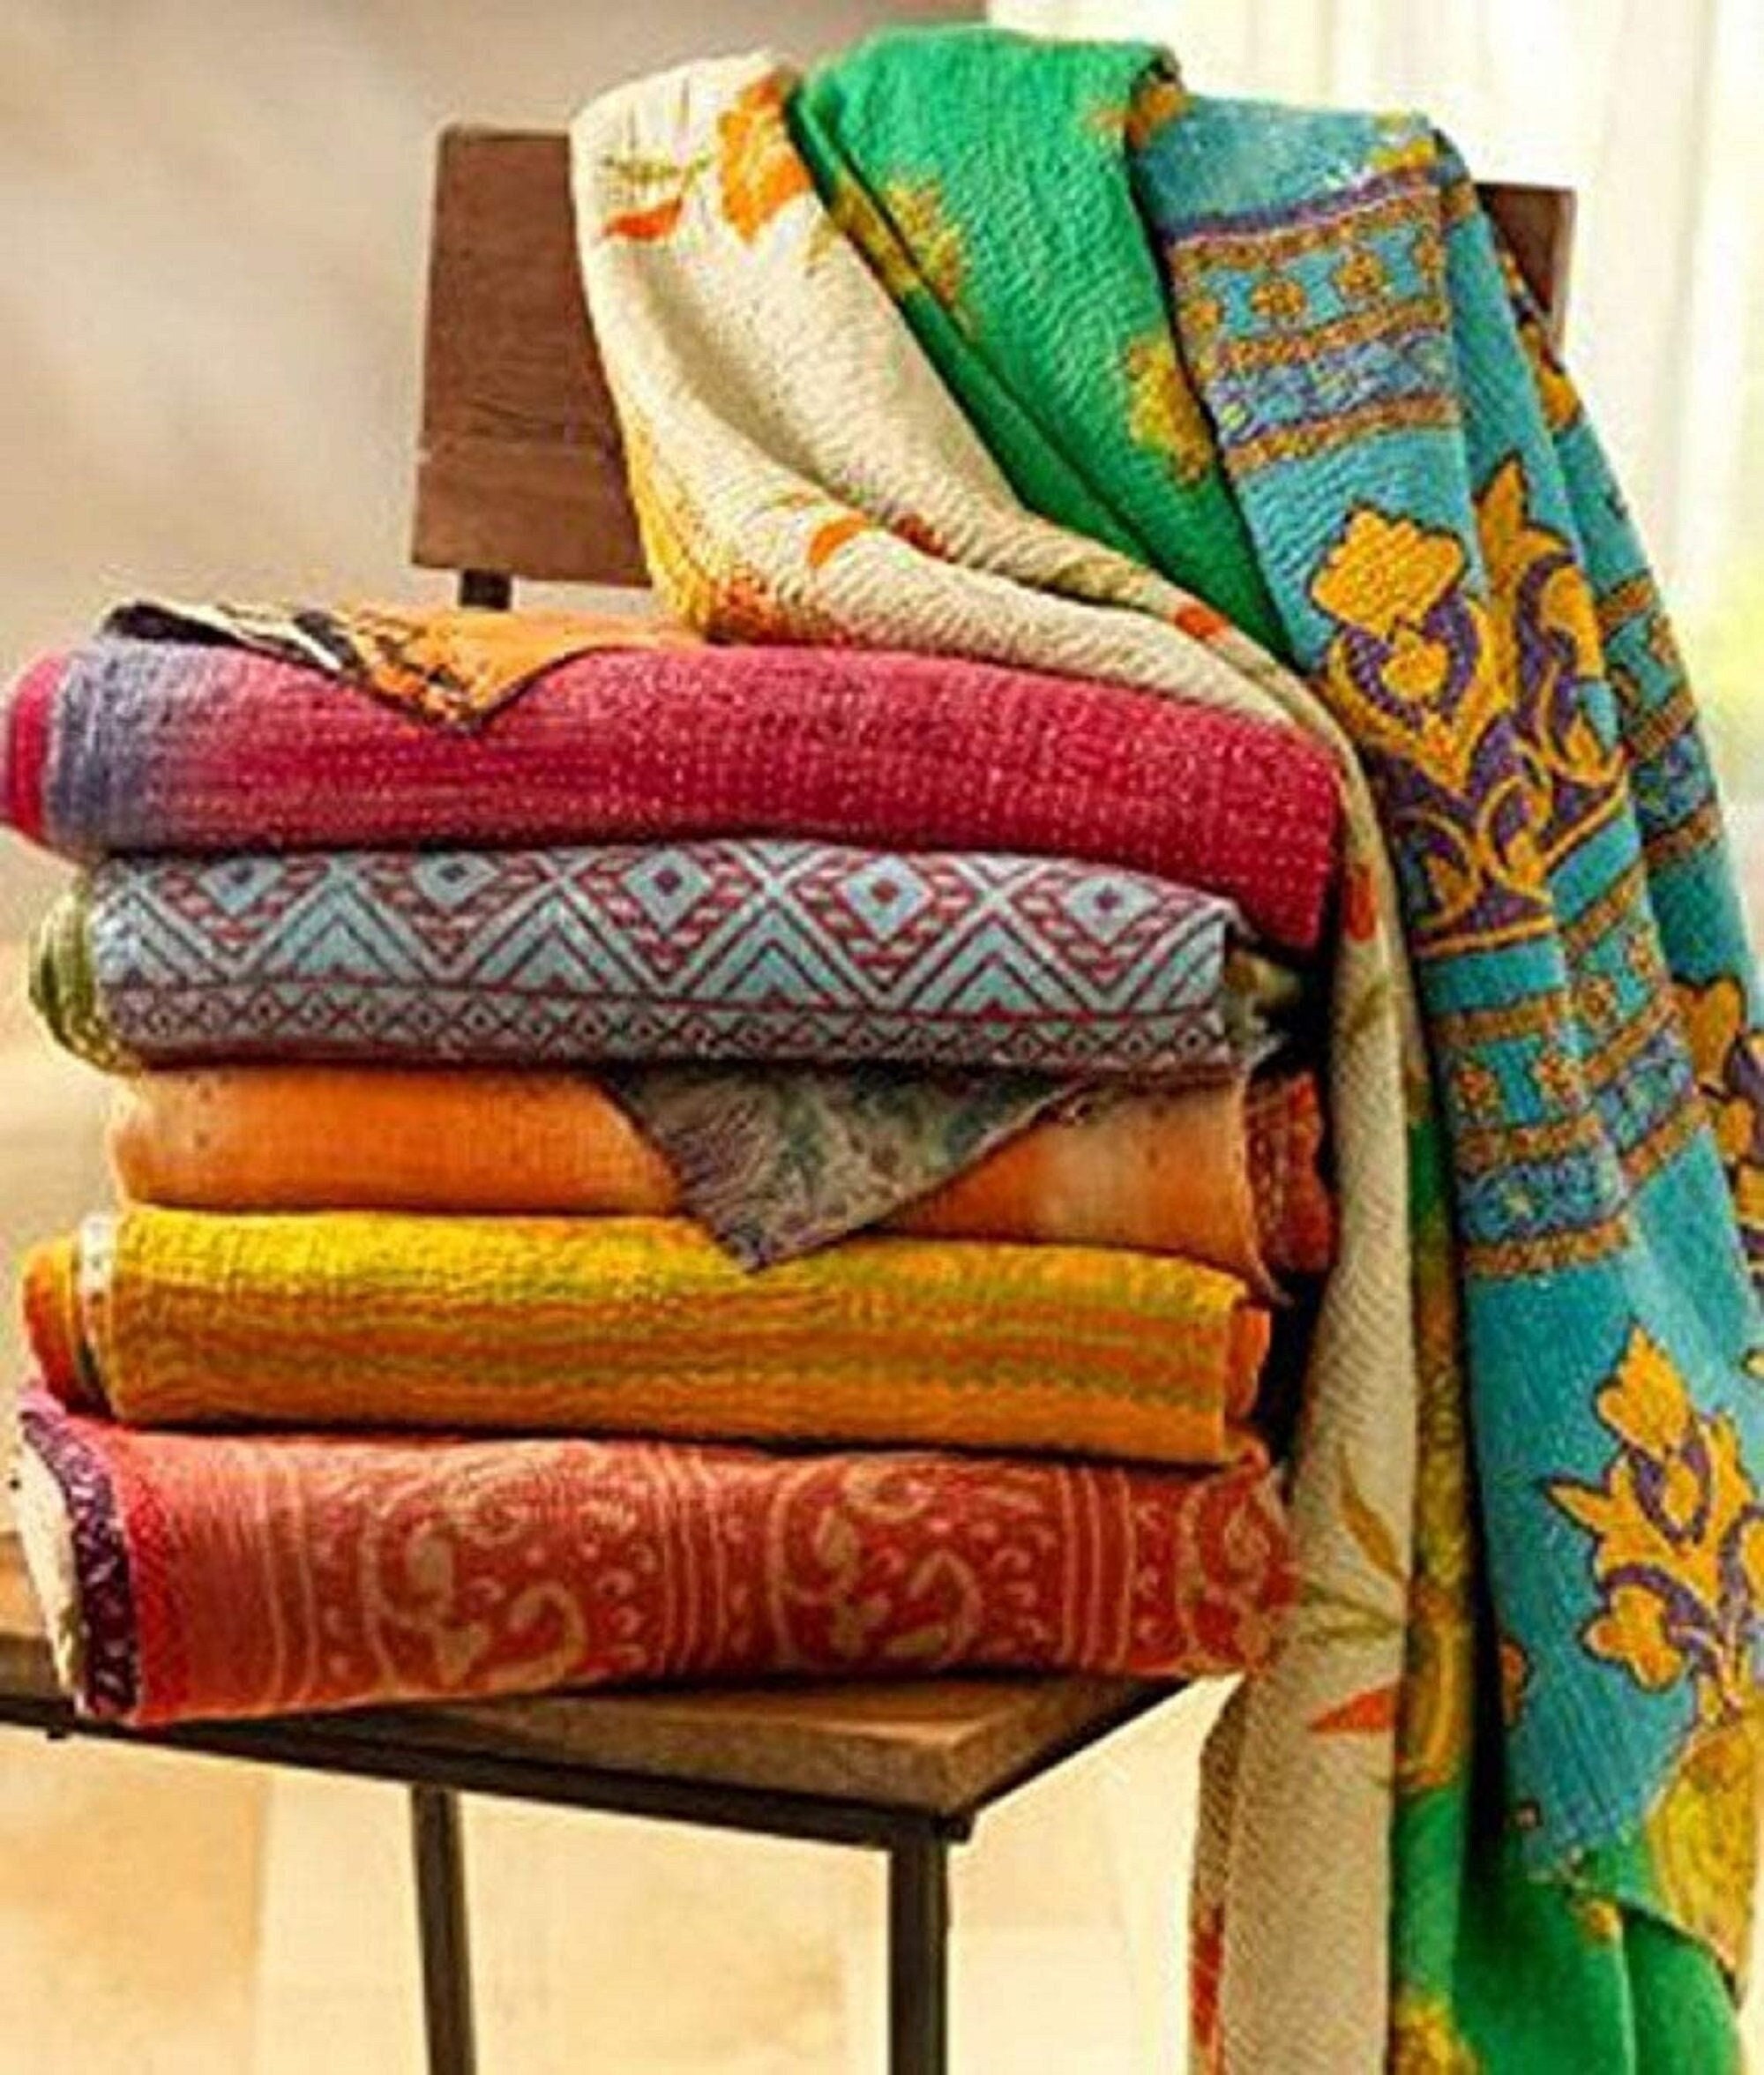 Wholesale Lot 5 Indian Kantha Quilt Vintage Reversible Handmade Colorful Blanket 